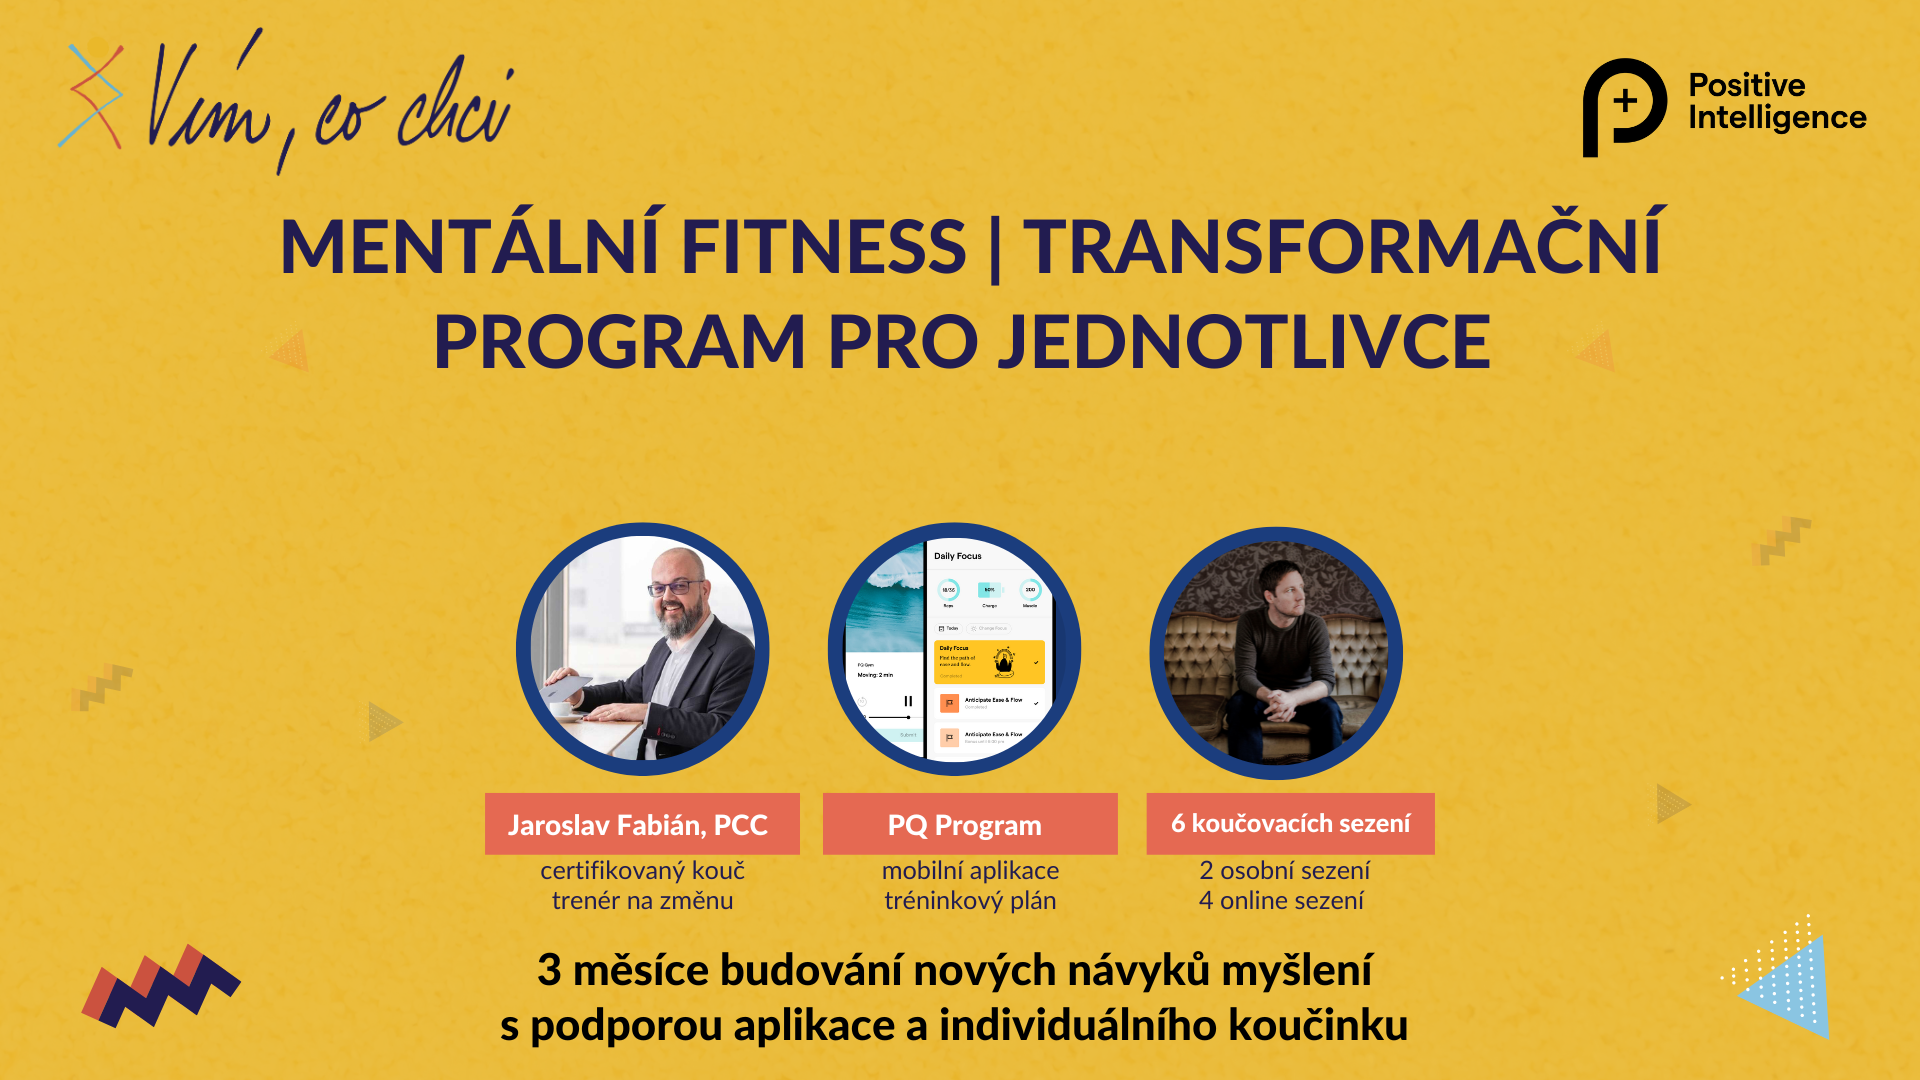 Mentální fitness | transformační program pro jednotlivce